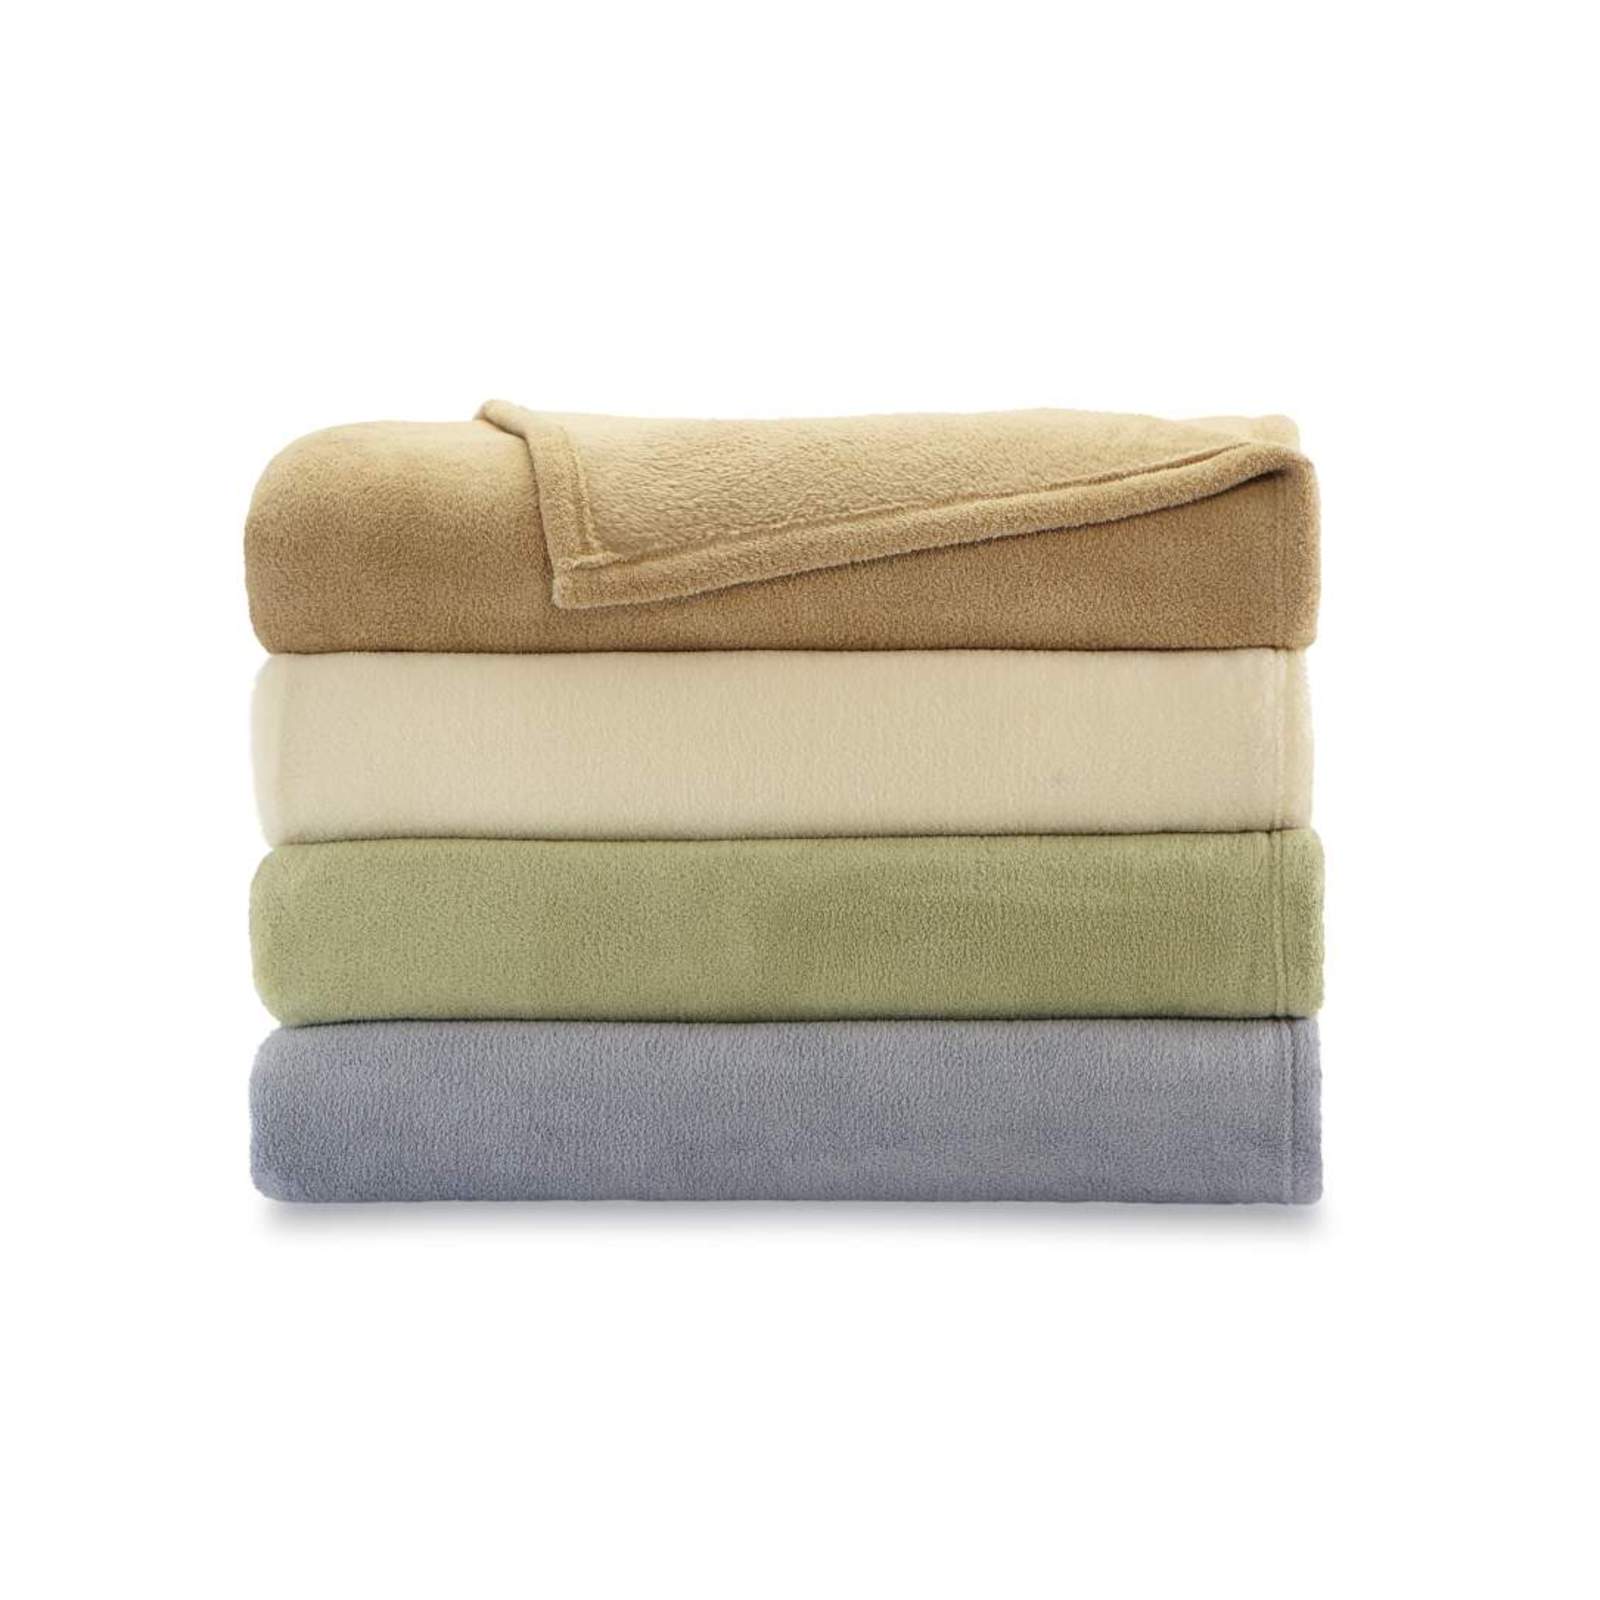 Colormate Super Soft Blanket